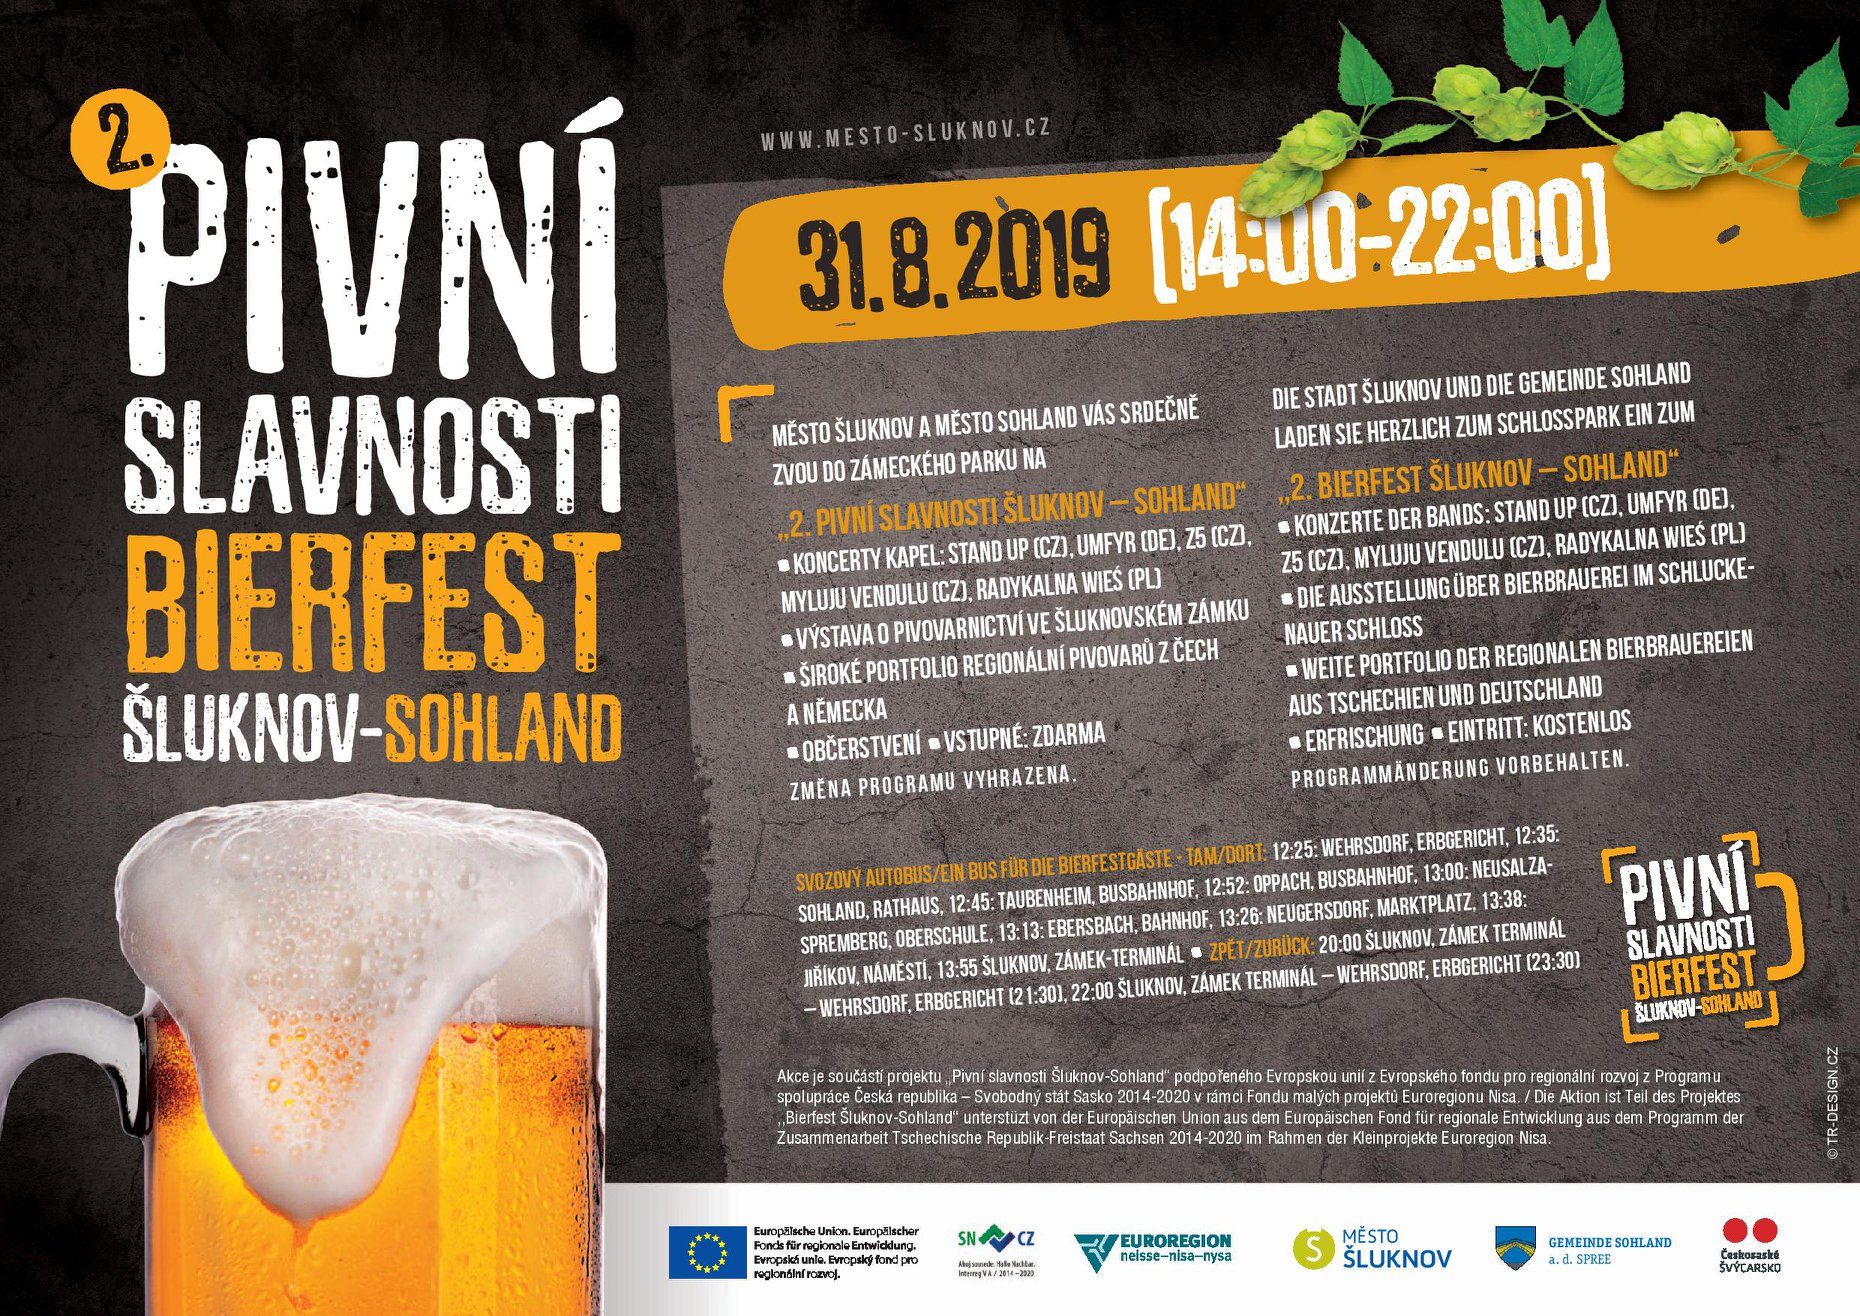 Pivní slavnosti - Bierfest 2019 (Šluknov-Sohland)